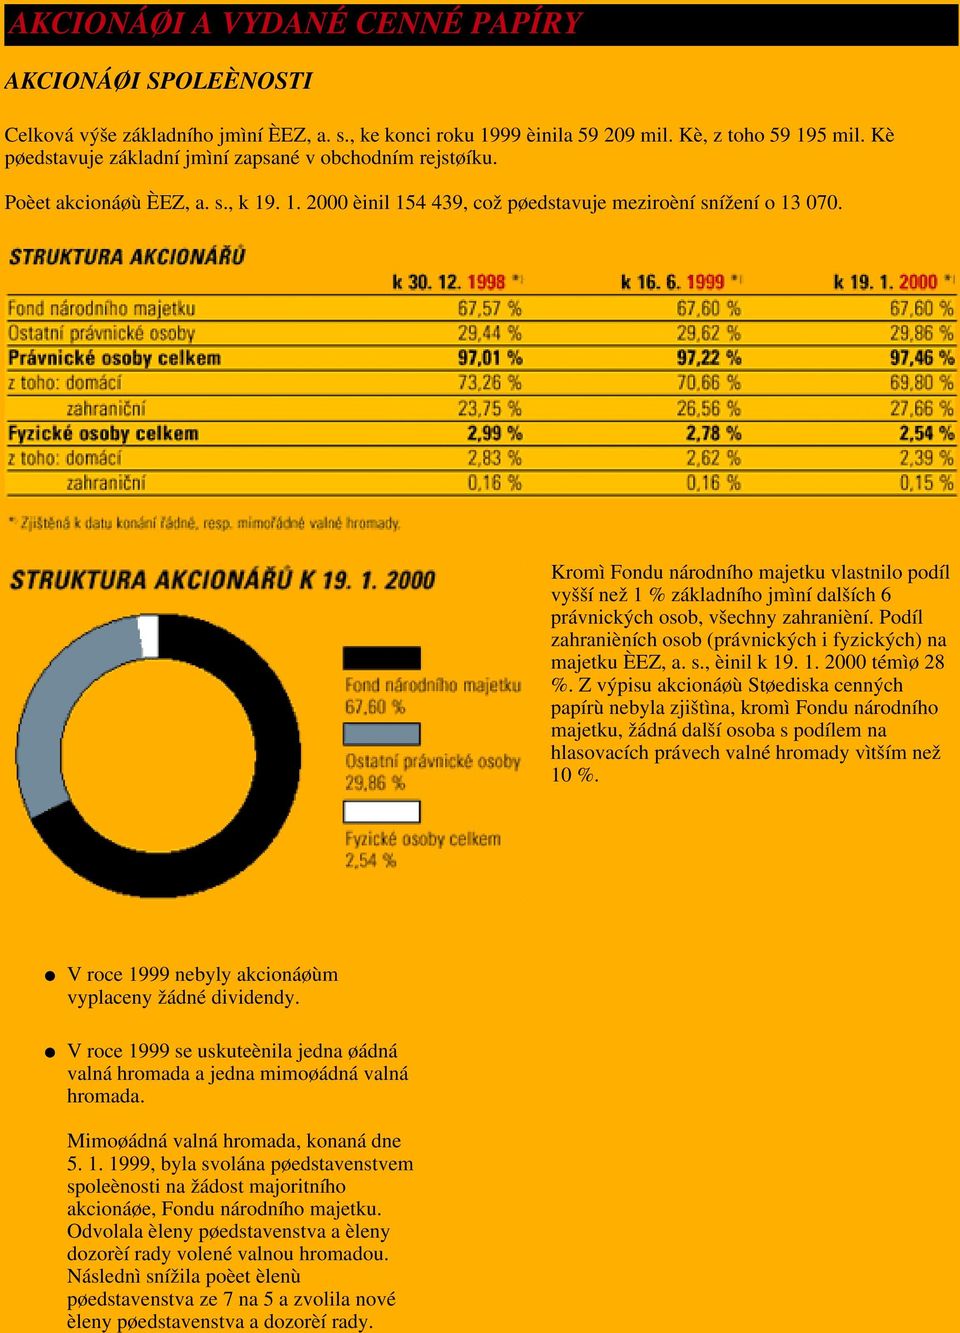 Kromì Fondu národního majetku vlastnilo podíl vyšší než 1 % základního jmìní dalších 6 právnických osob, všechny zahranièní. Podíl zahranièních osob (právnických i fyzických) na majetku ÈEZ, a. s.